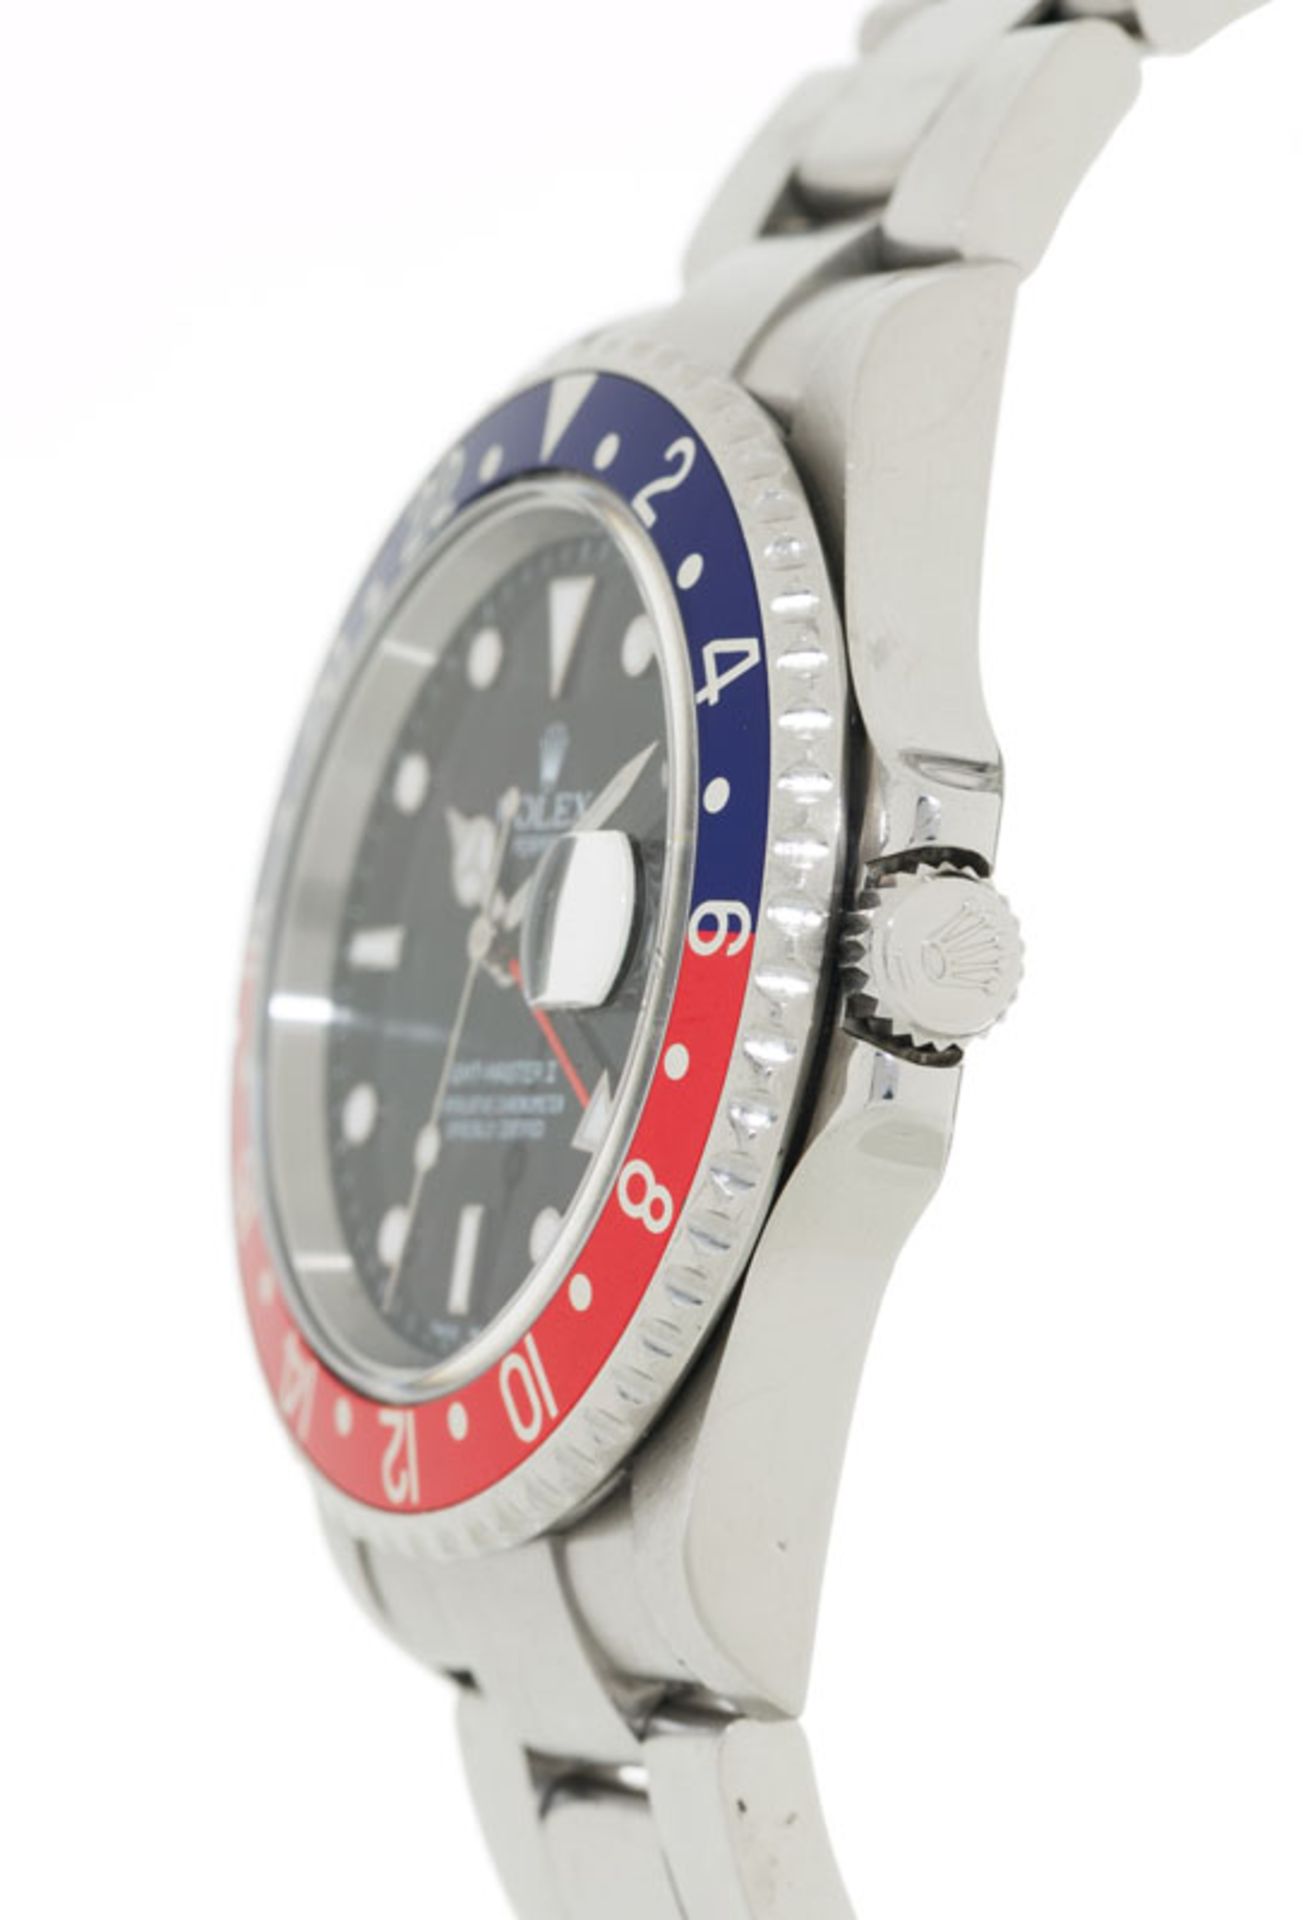 Rolex, GMT Master II, réf. 16710/2180, montre-bracelet en acier avec indication de la date, garantie - Bild 2 aus 5